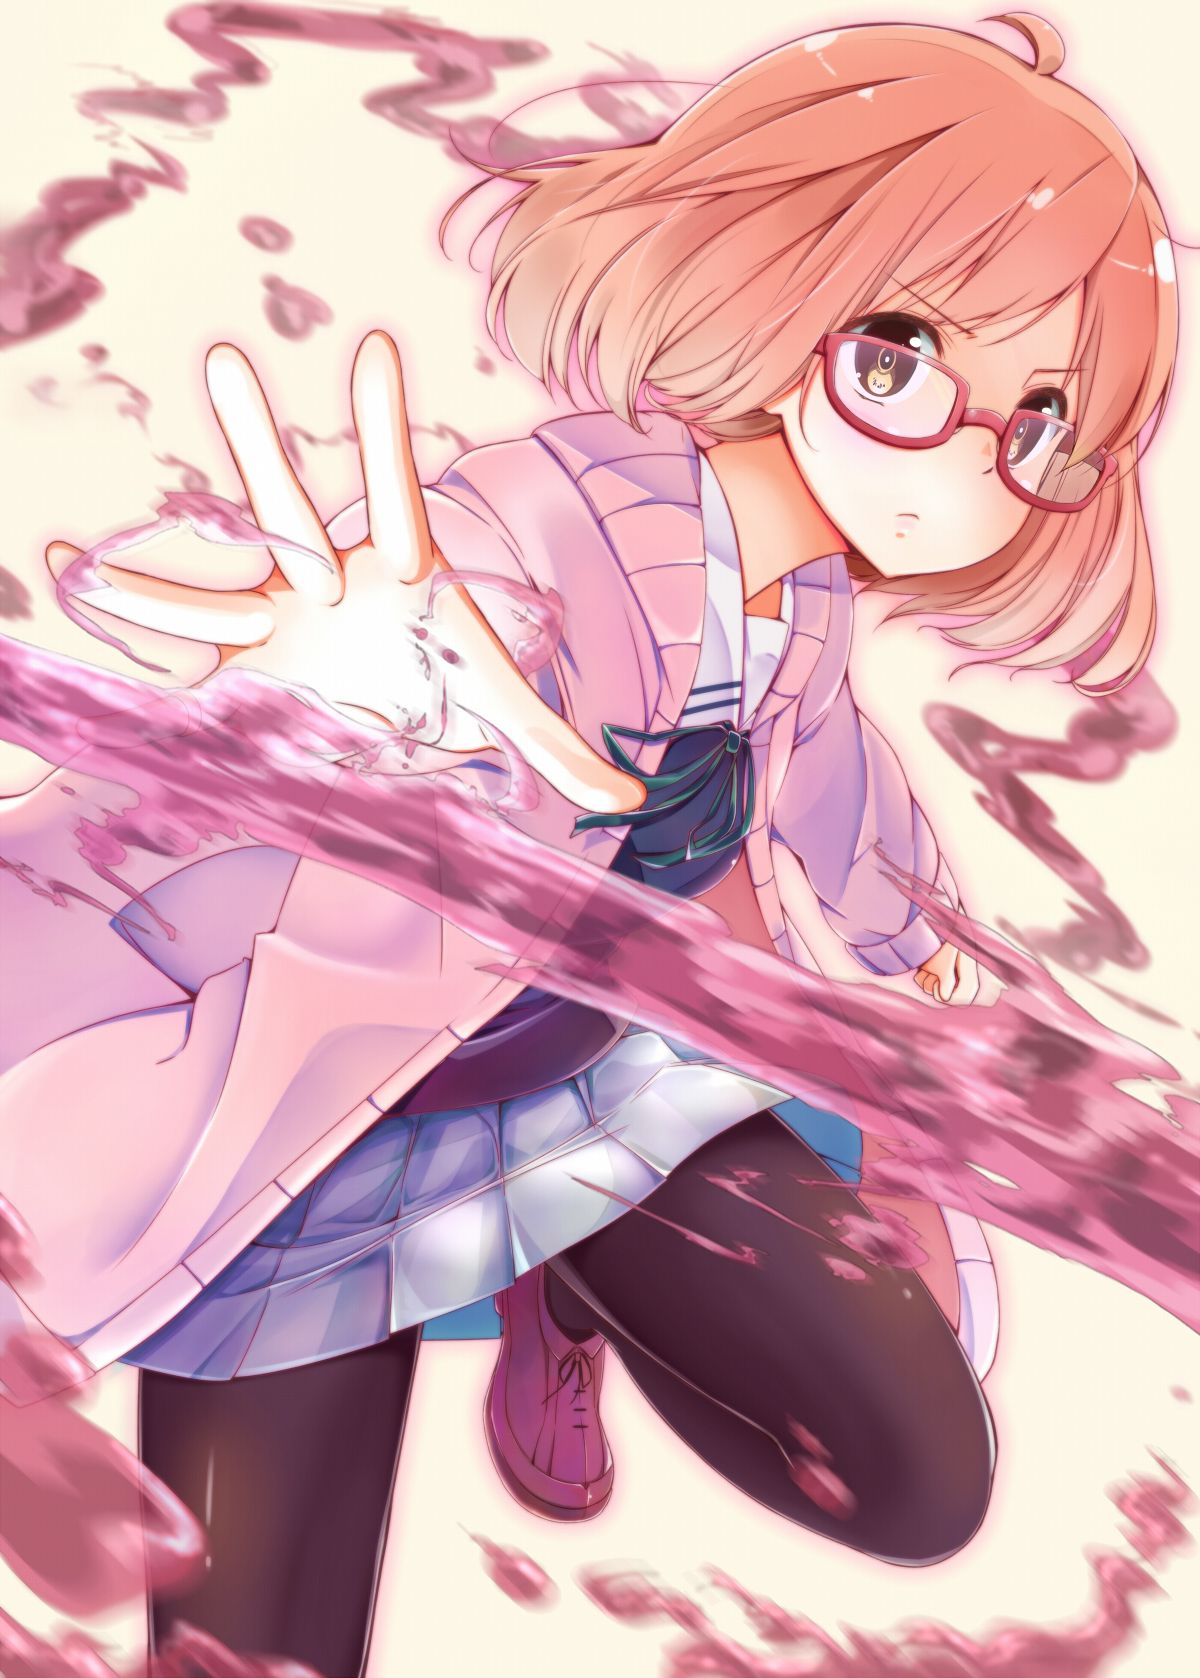 Hình ảnh anime girl đeo kính xinh đẹp, cuốn hút mọi ánh nhìn